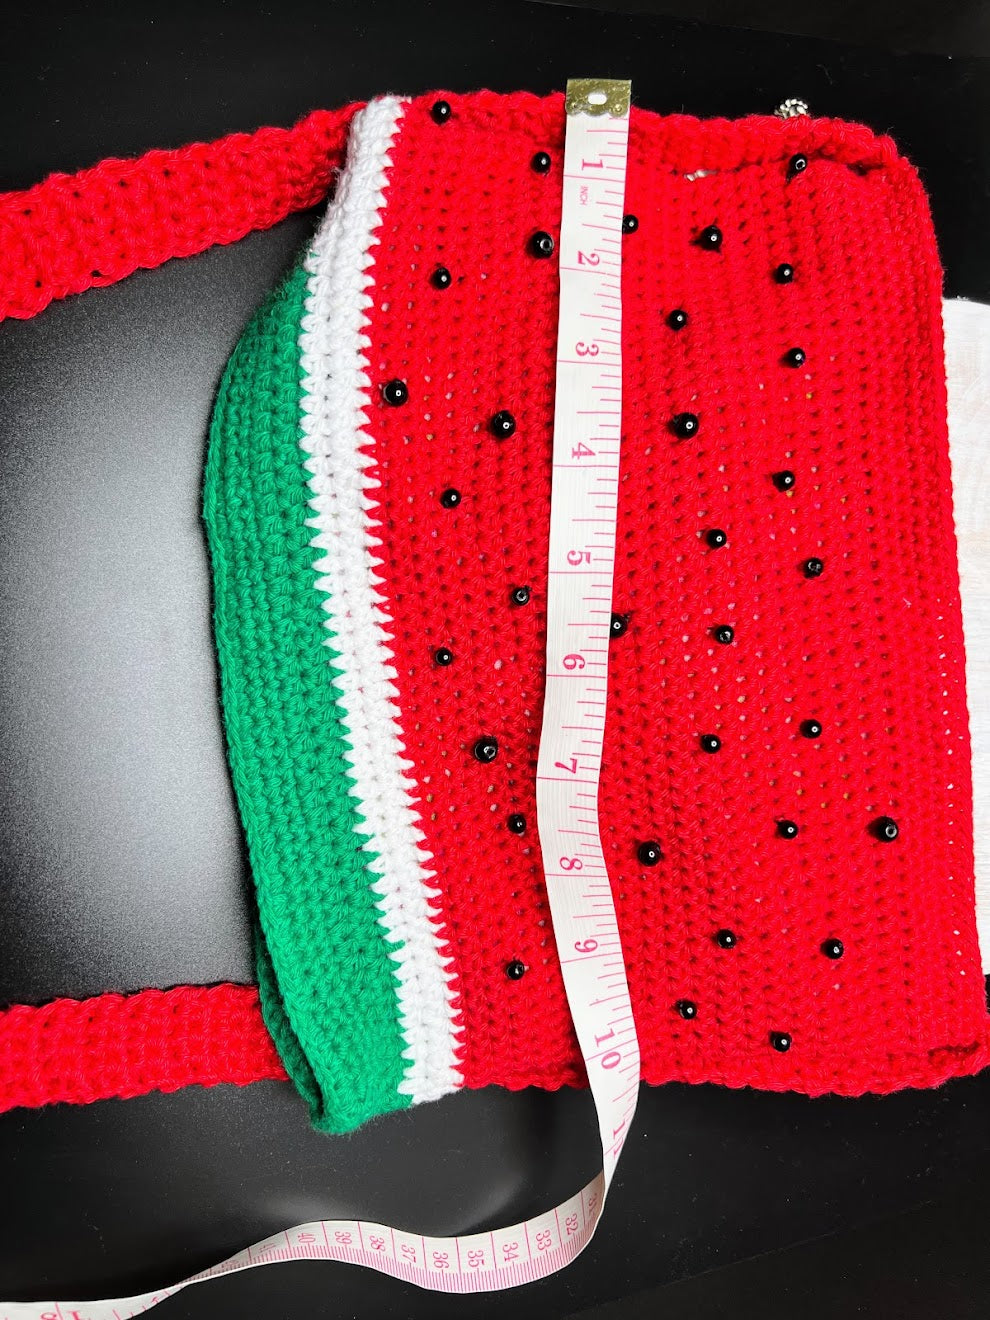 Crochet Watermelon Bag - For Girls & Teens